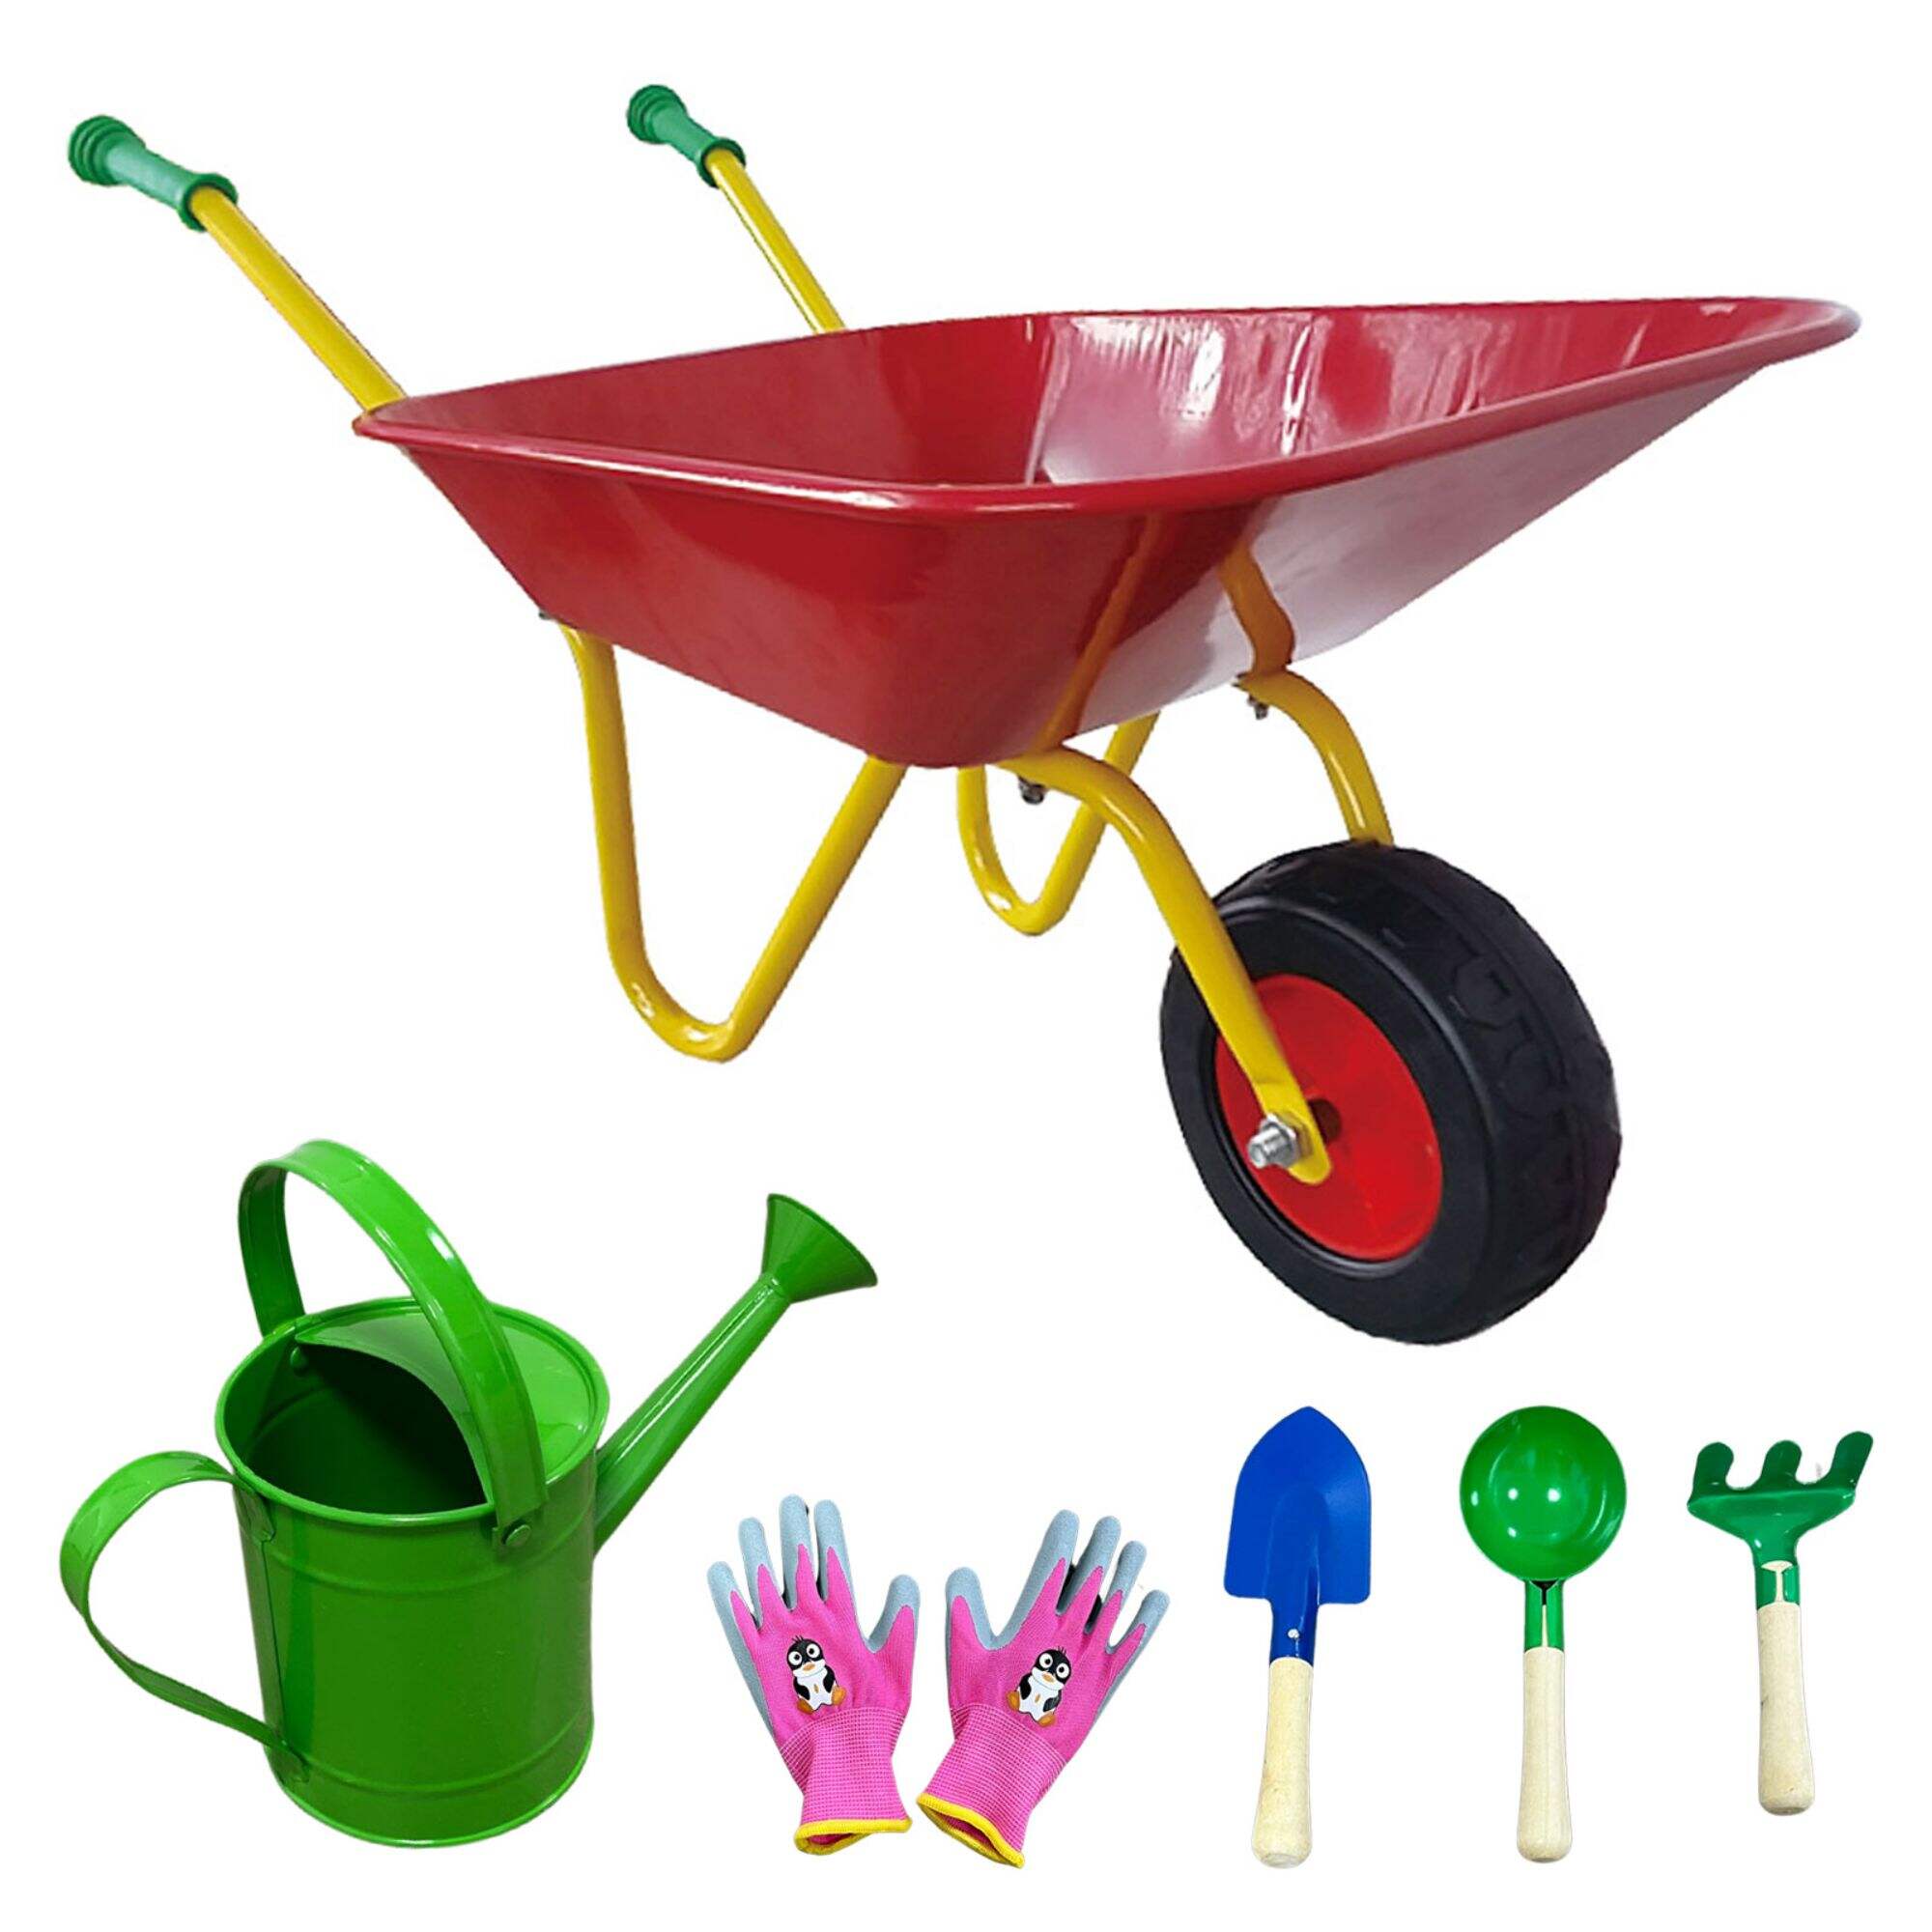 WB0102 Taczka zabawkowa dla dzieci, narzędzia ogrodnicze dla dzieci z 6